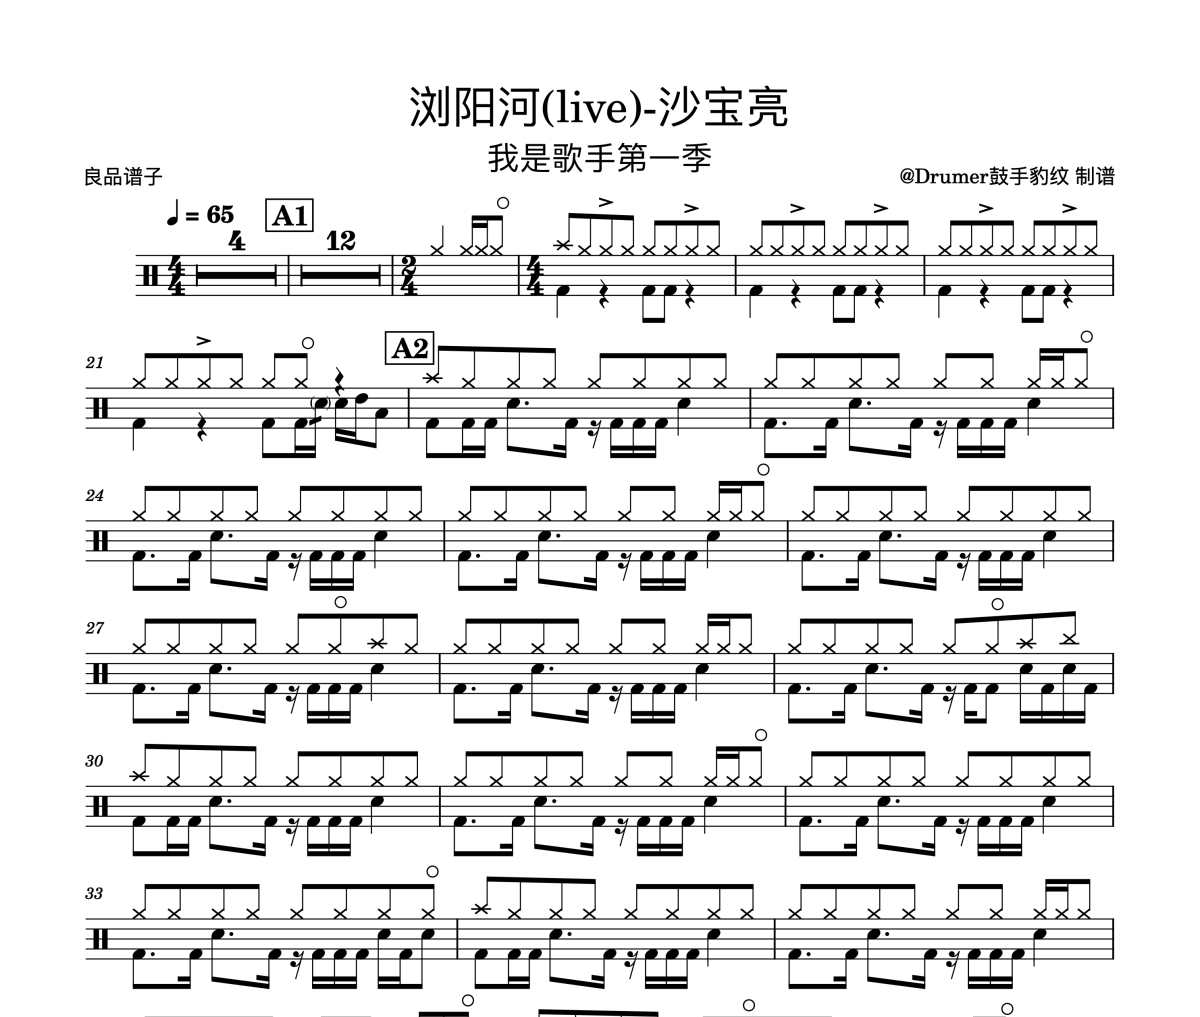 沙宝亮-浏阳河(live)-我是歌手架子鼓谱爵士鼓曲谱